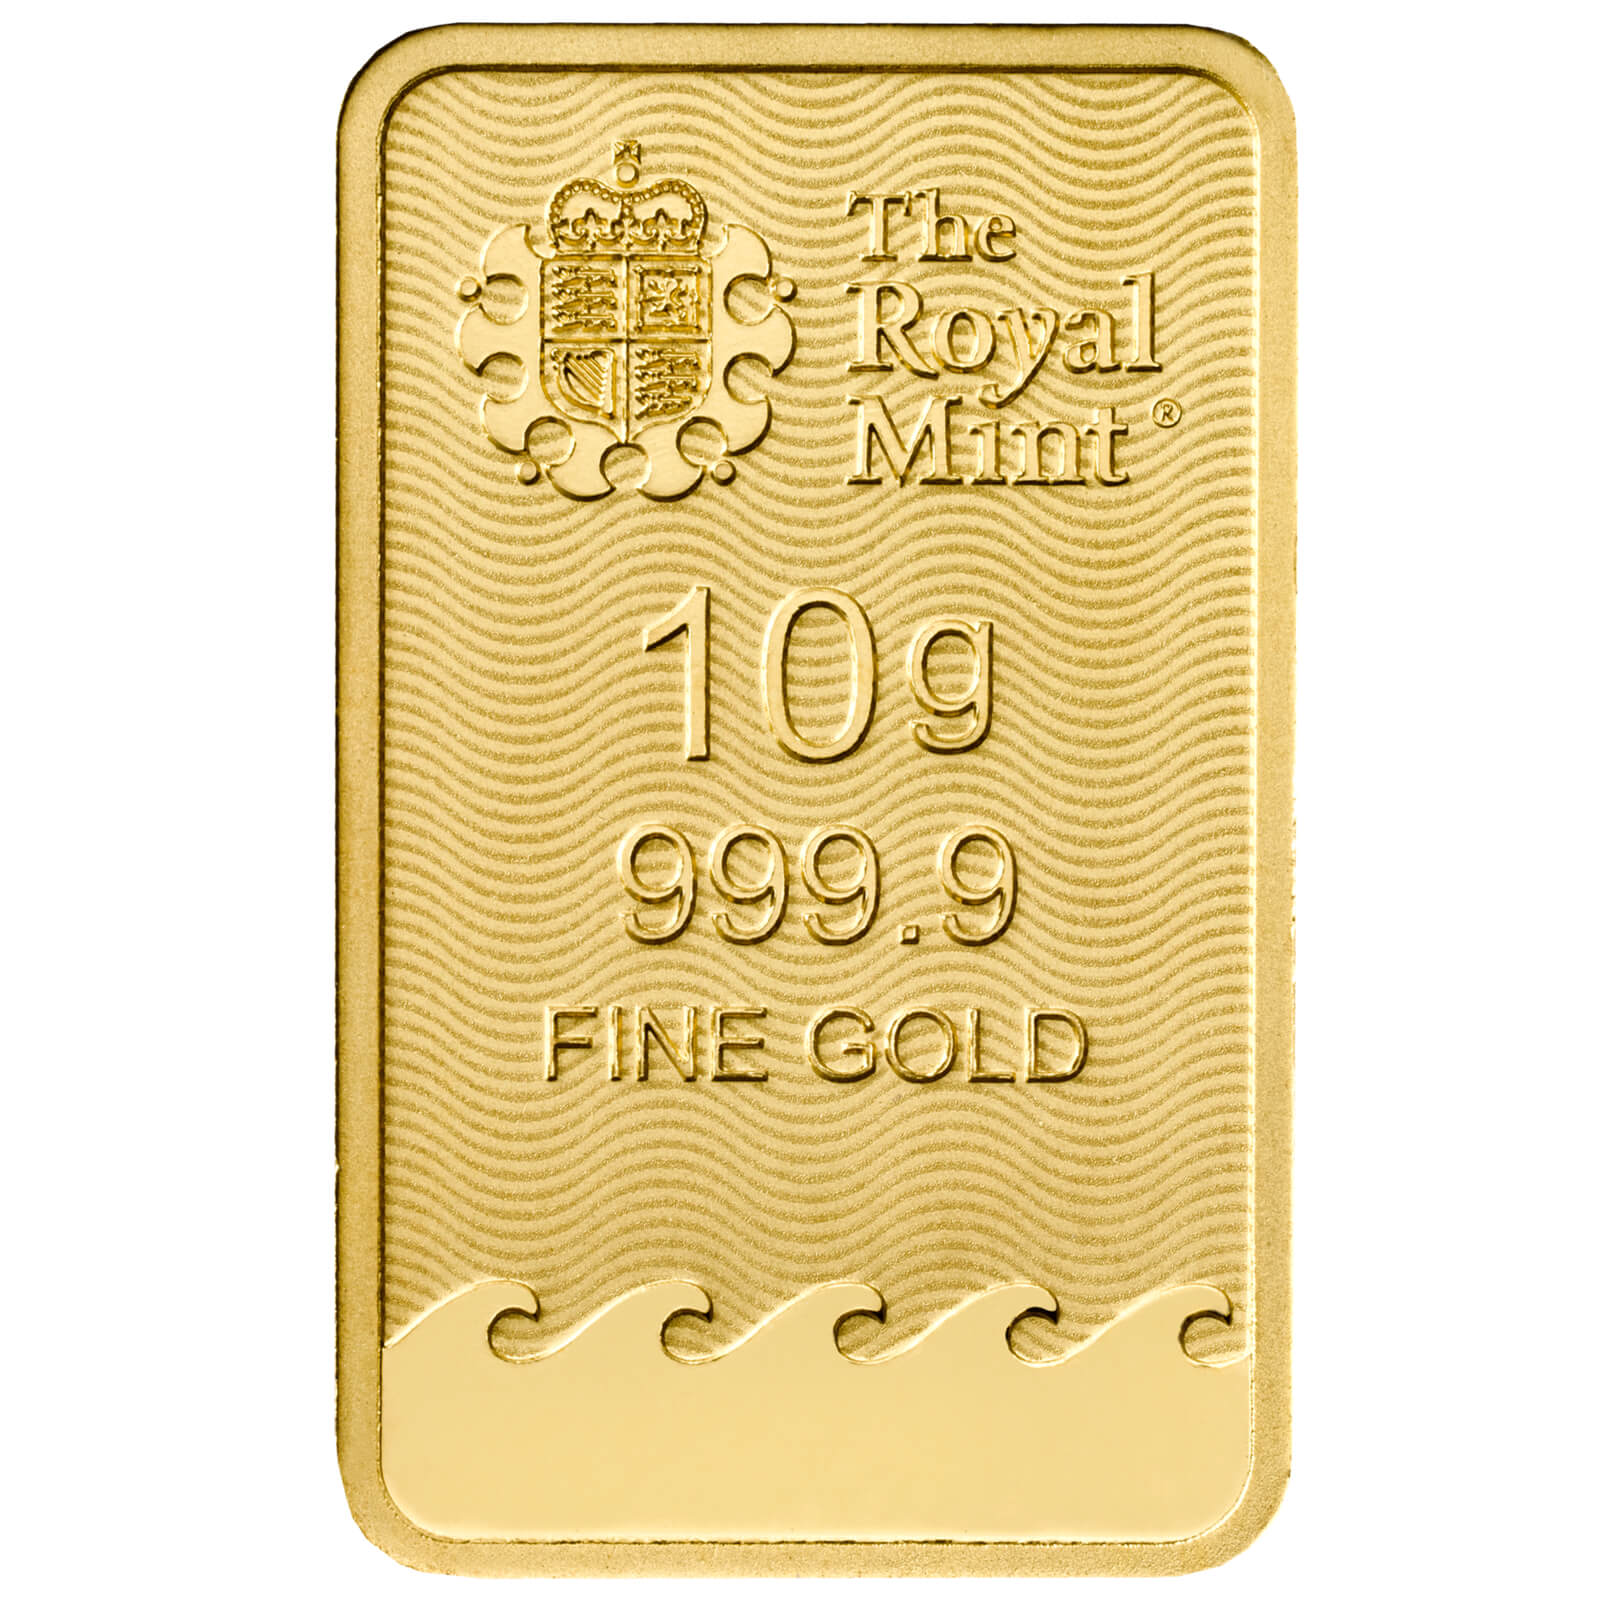 Zlatý investiční slitek Britannia 10 g - EKKA-Gold - EKKA-Gold - Specialista na investiční zlato, stříbro, platinu, paládium